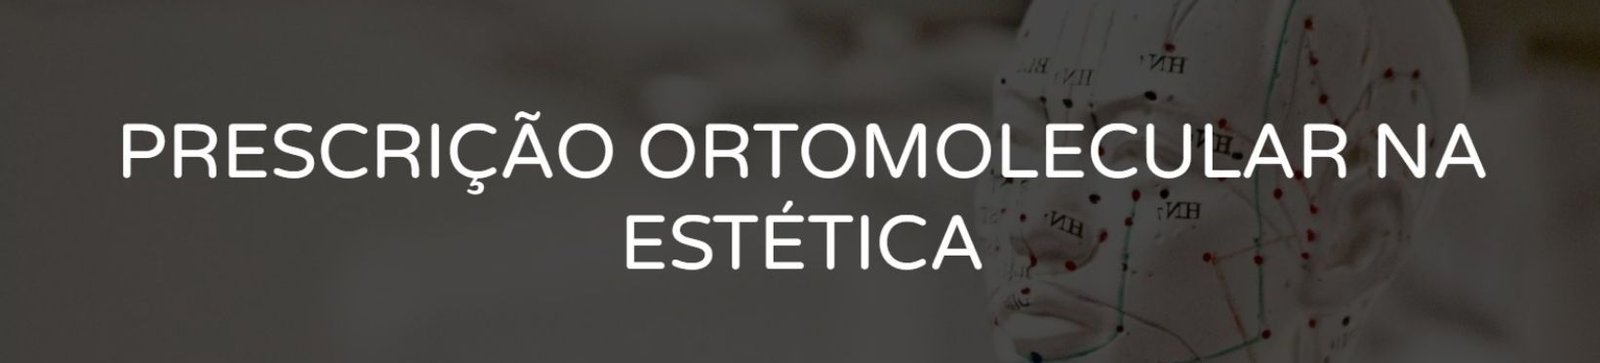 Prescrição Ortomolecular na Estética